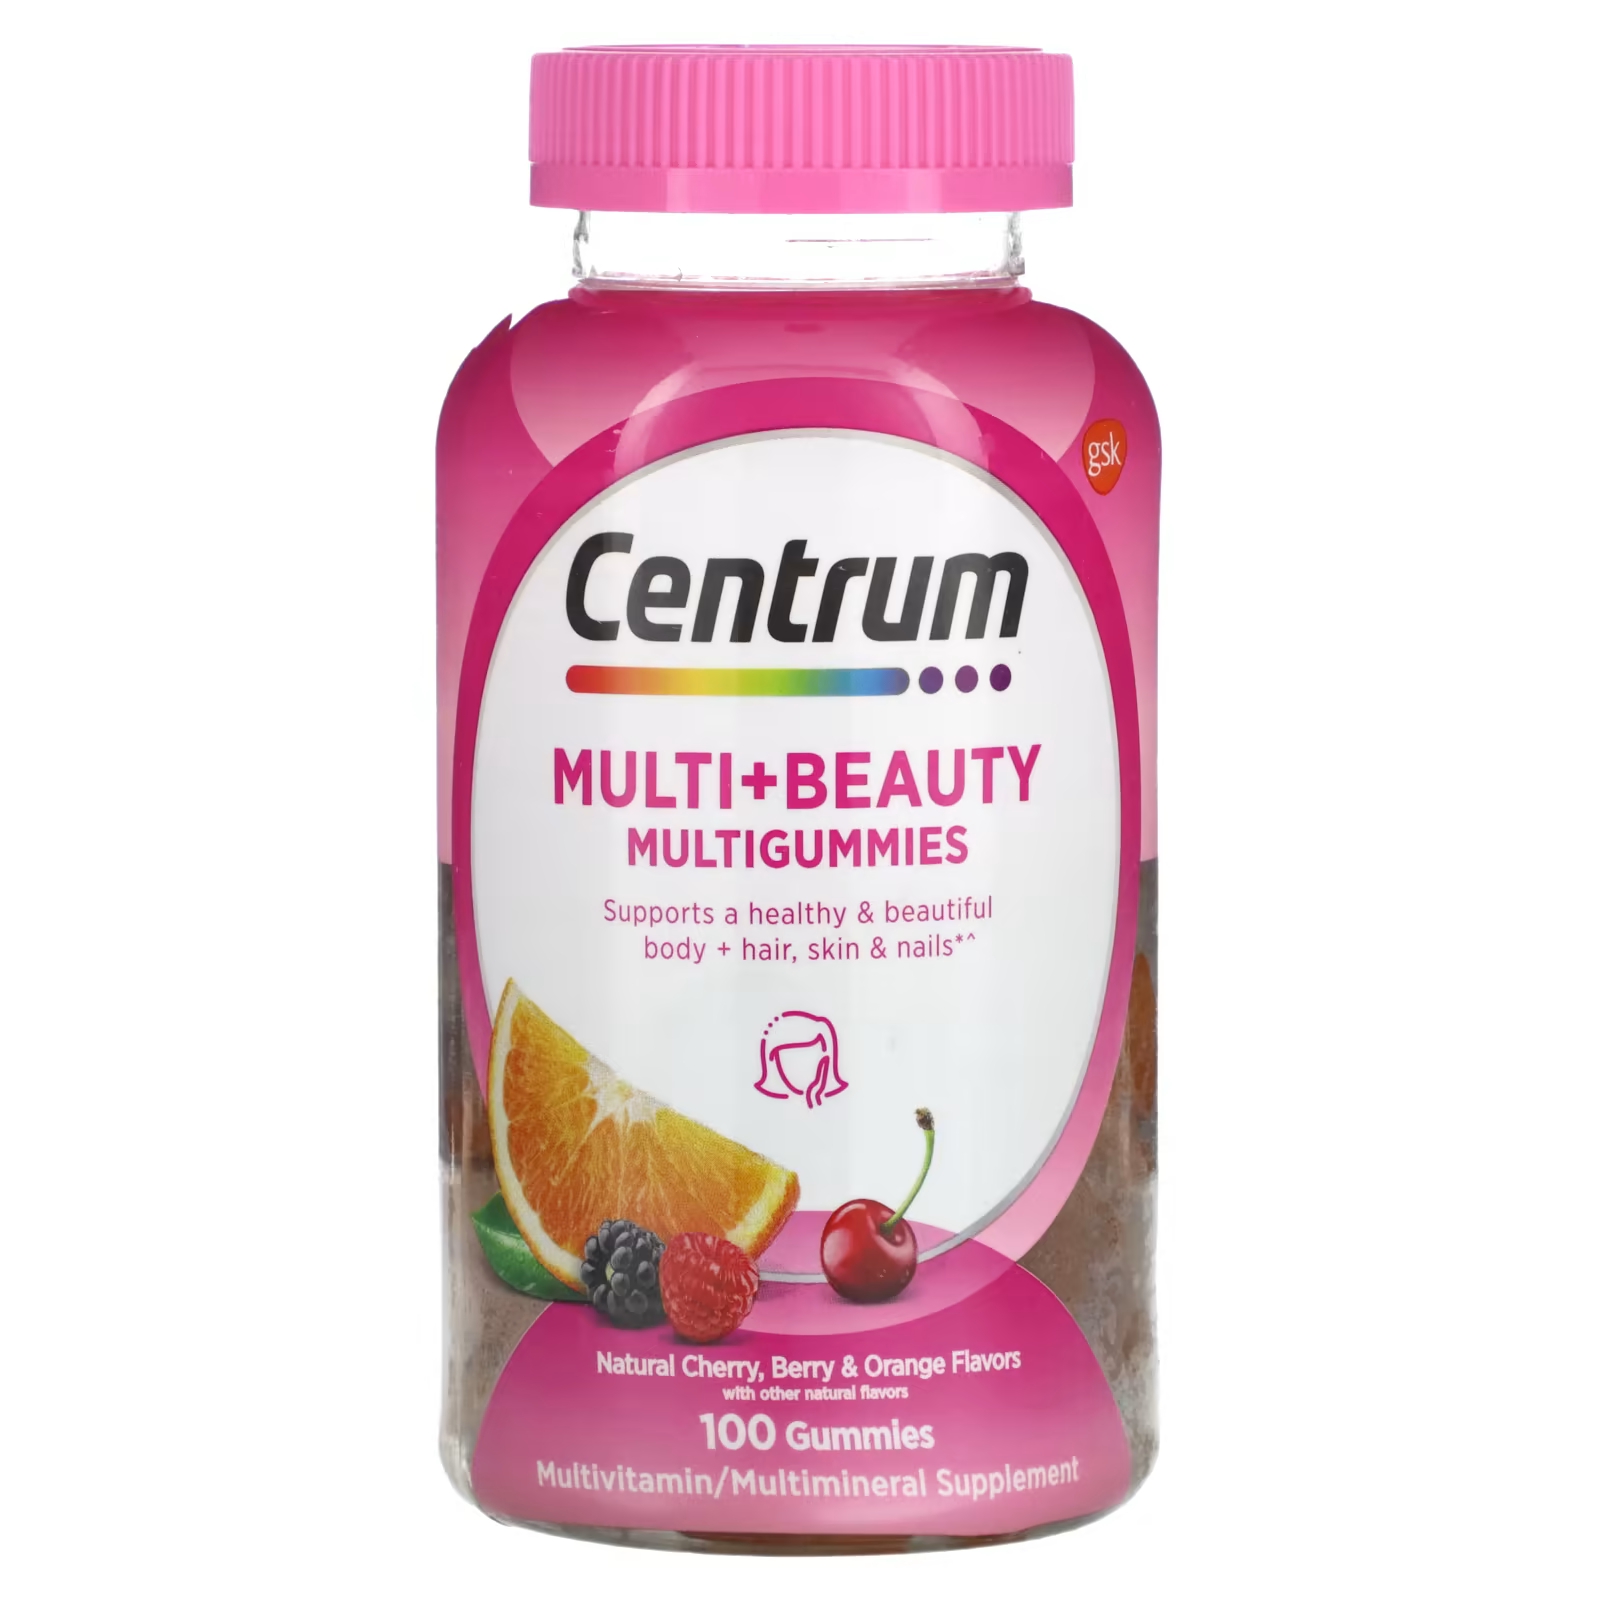 Мультивитаминная добавка Centrum Multi + Beauty Multigummies вишня, ягоды и апельсин, 100 жевательных конфет